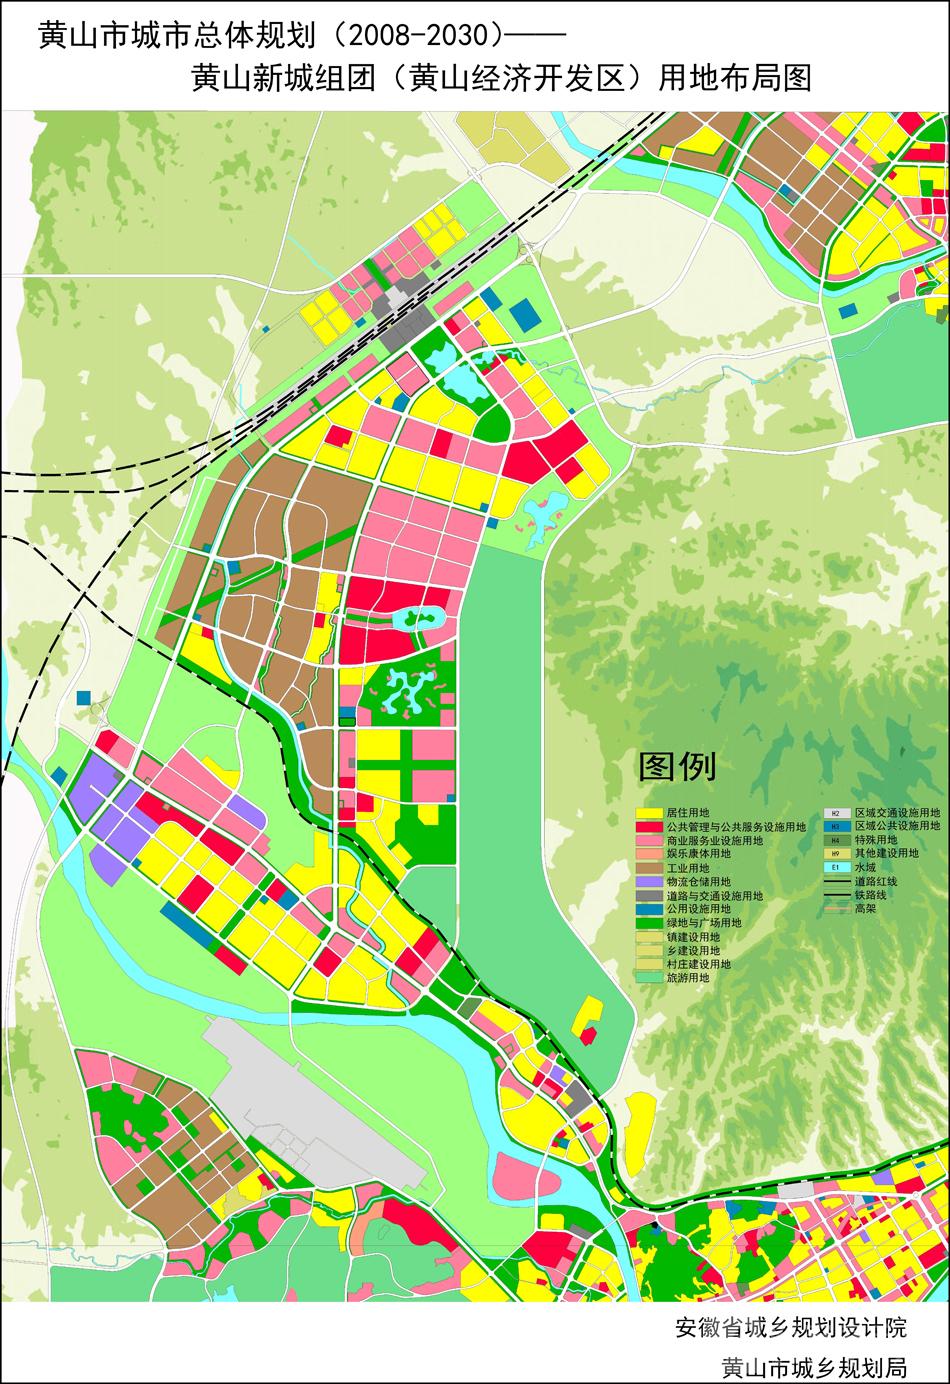 黄山高新区组团城市总体规划(2008-2030)